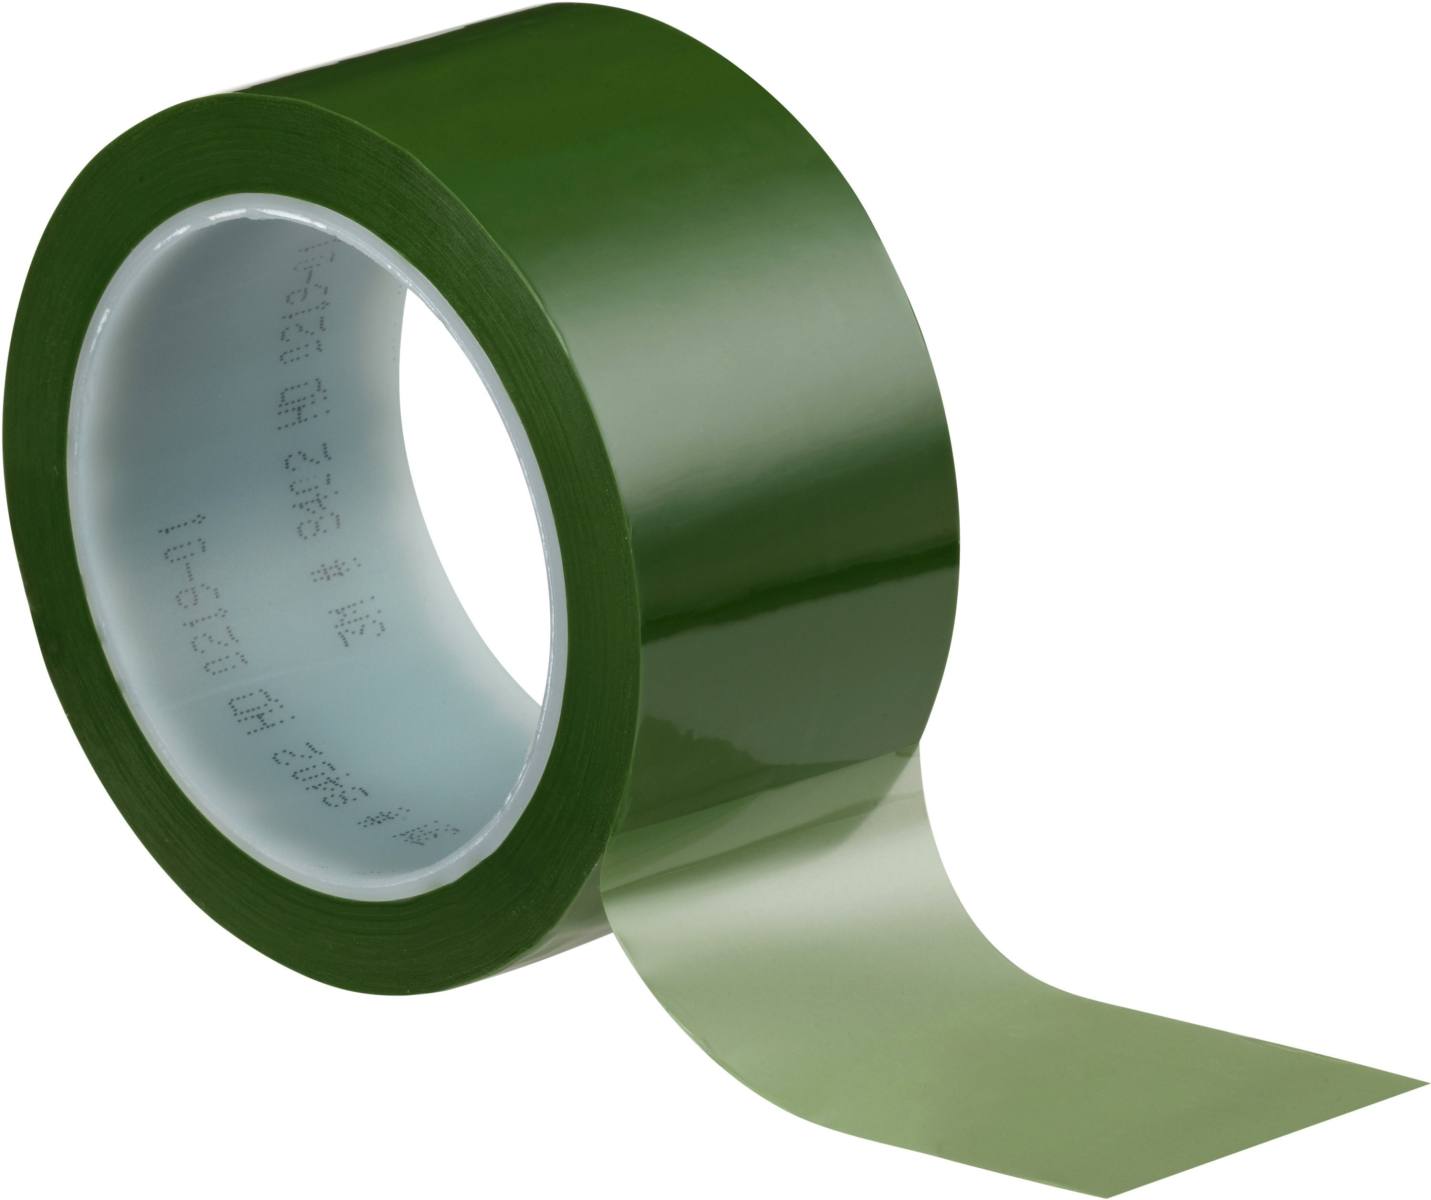 3M Polyesterklebeband 8402 12mmx66m grün